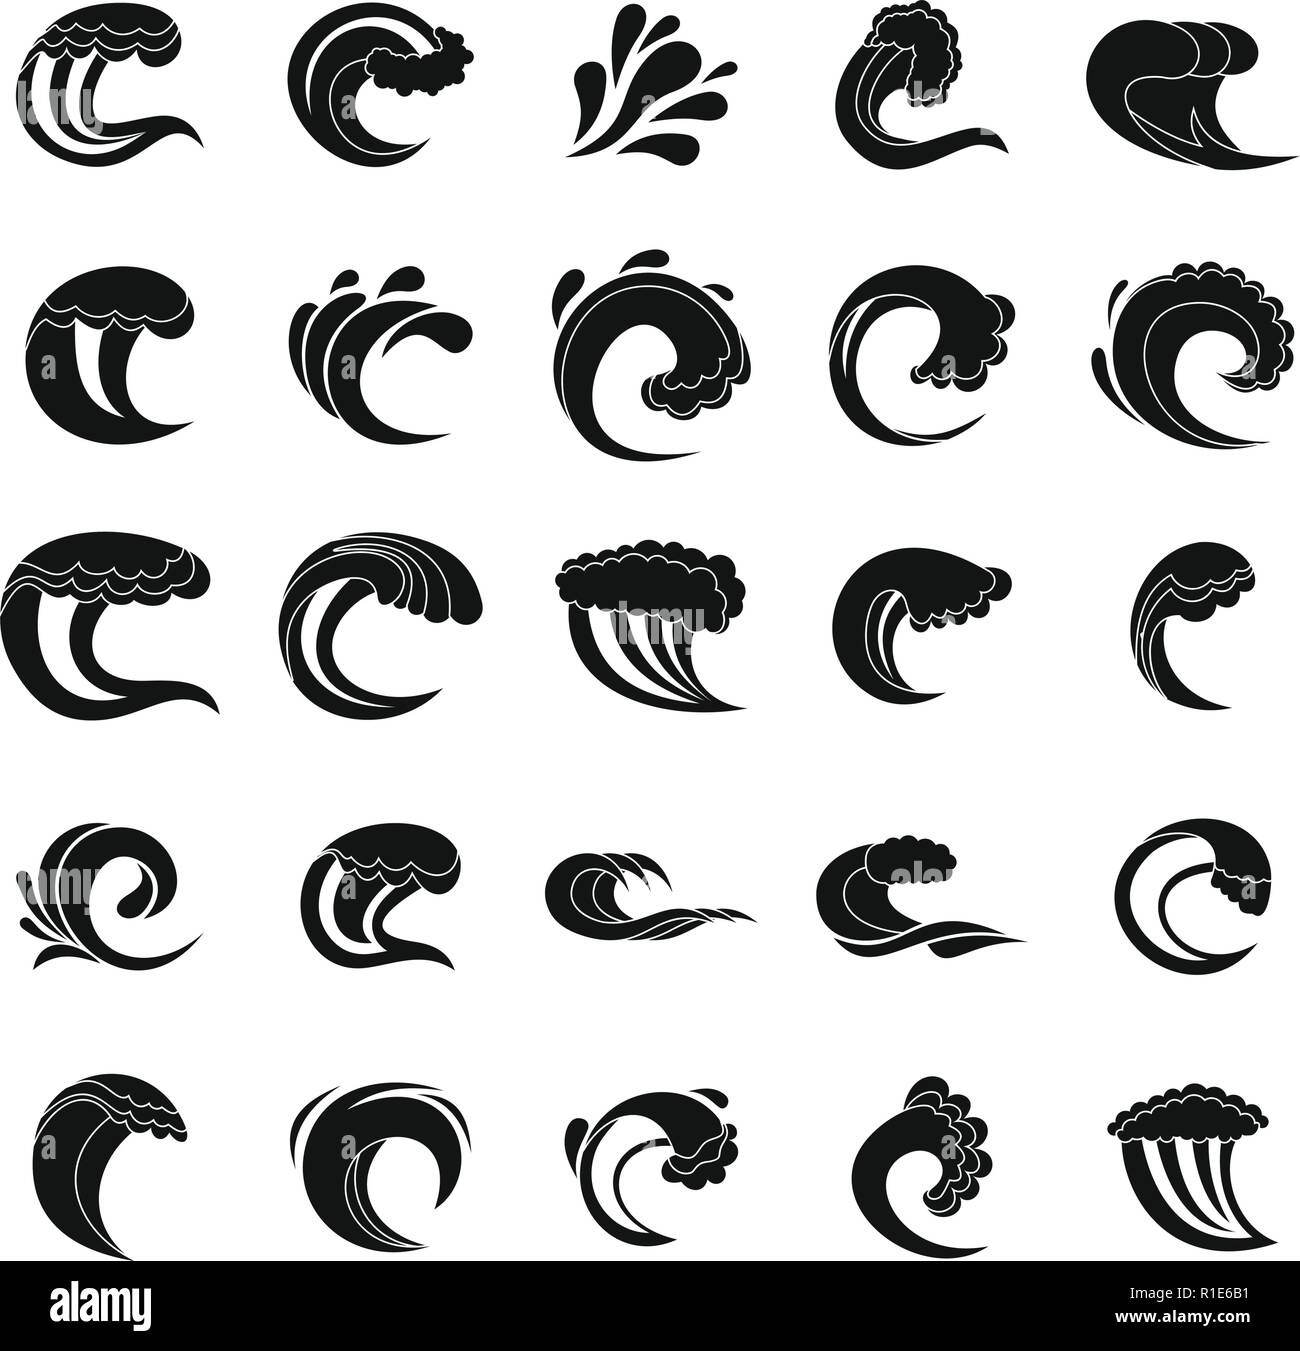 Wasser Welle Symbole gesetzt. Einfache Abbildung: 25 Wasser wave Vector Icons für Web Stock Vektor